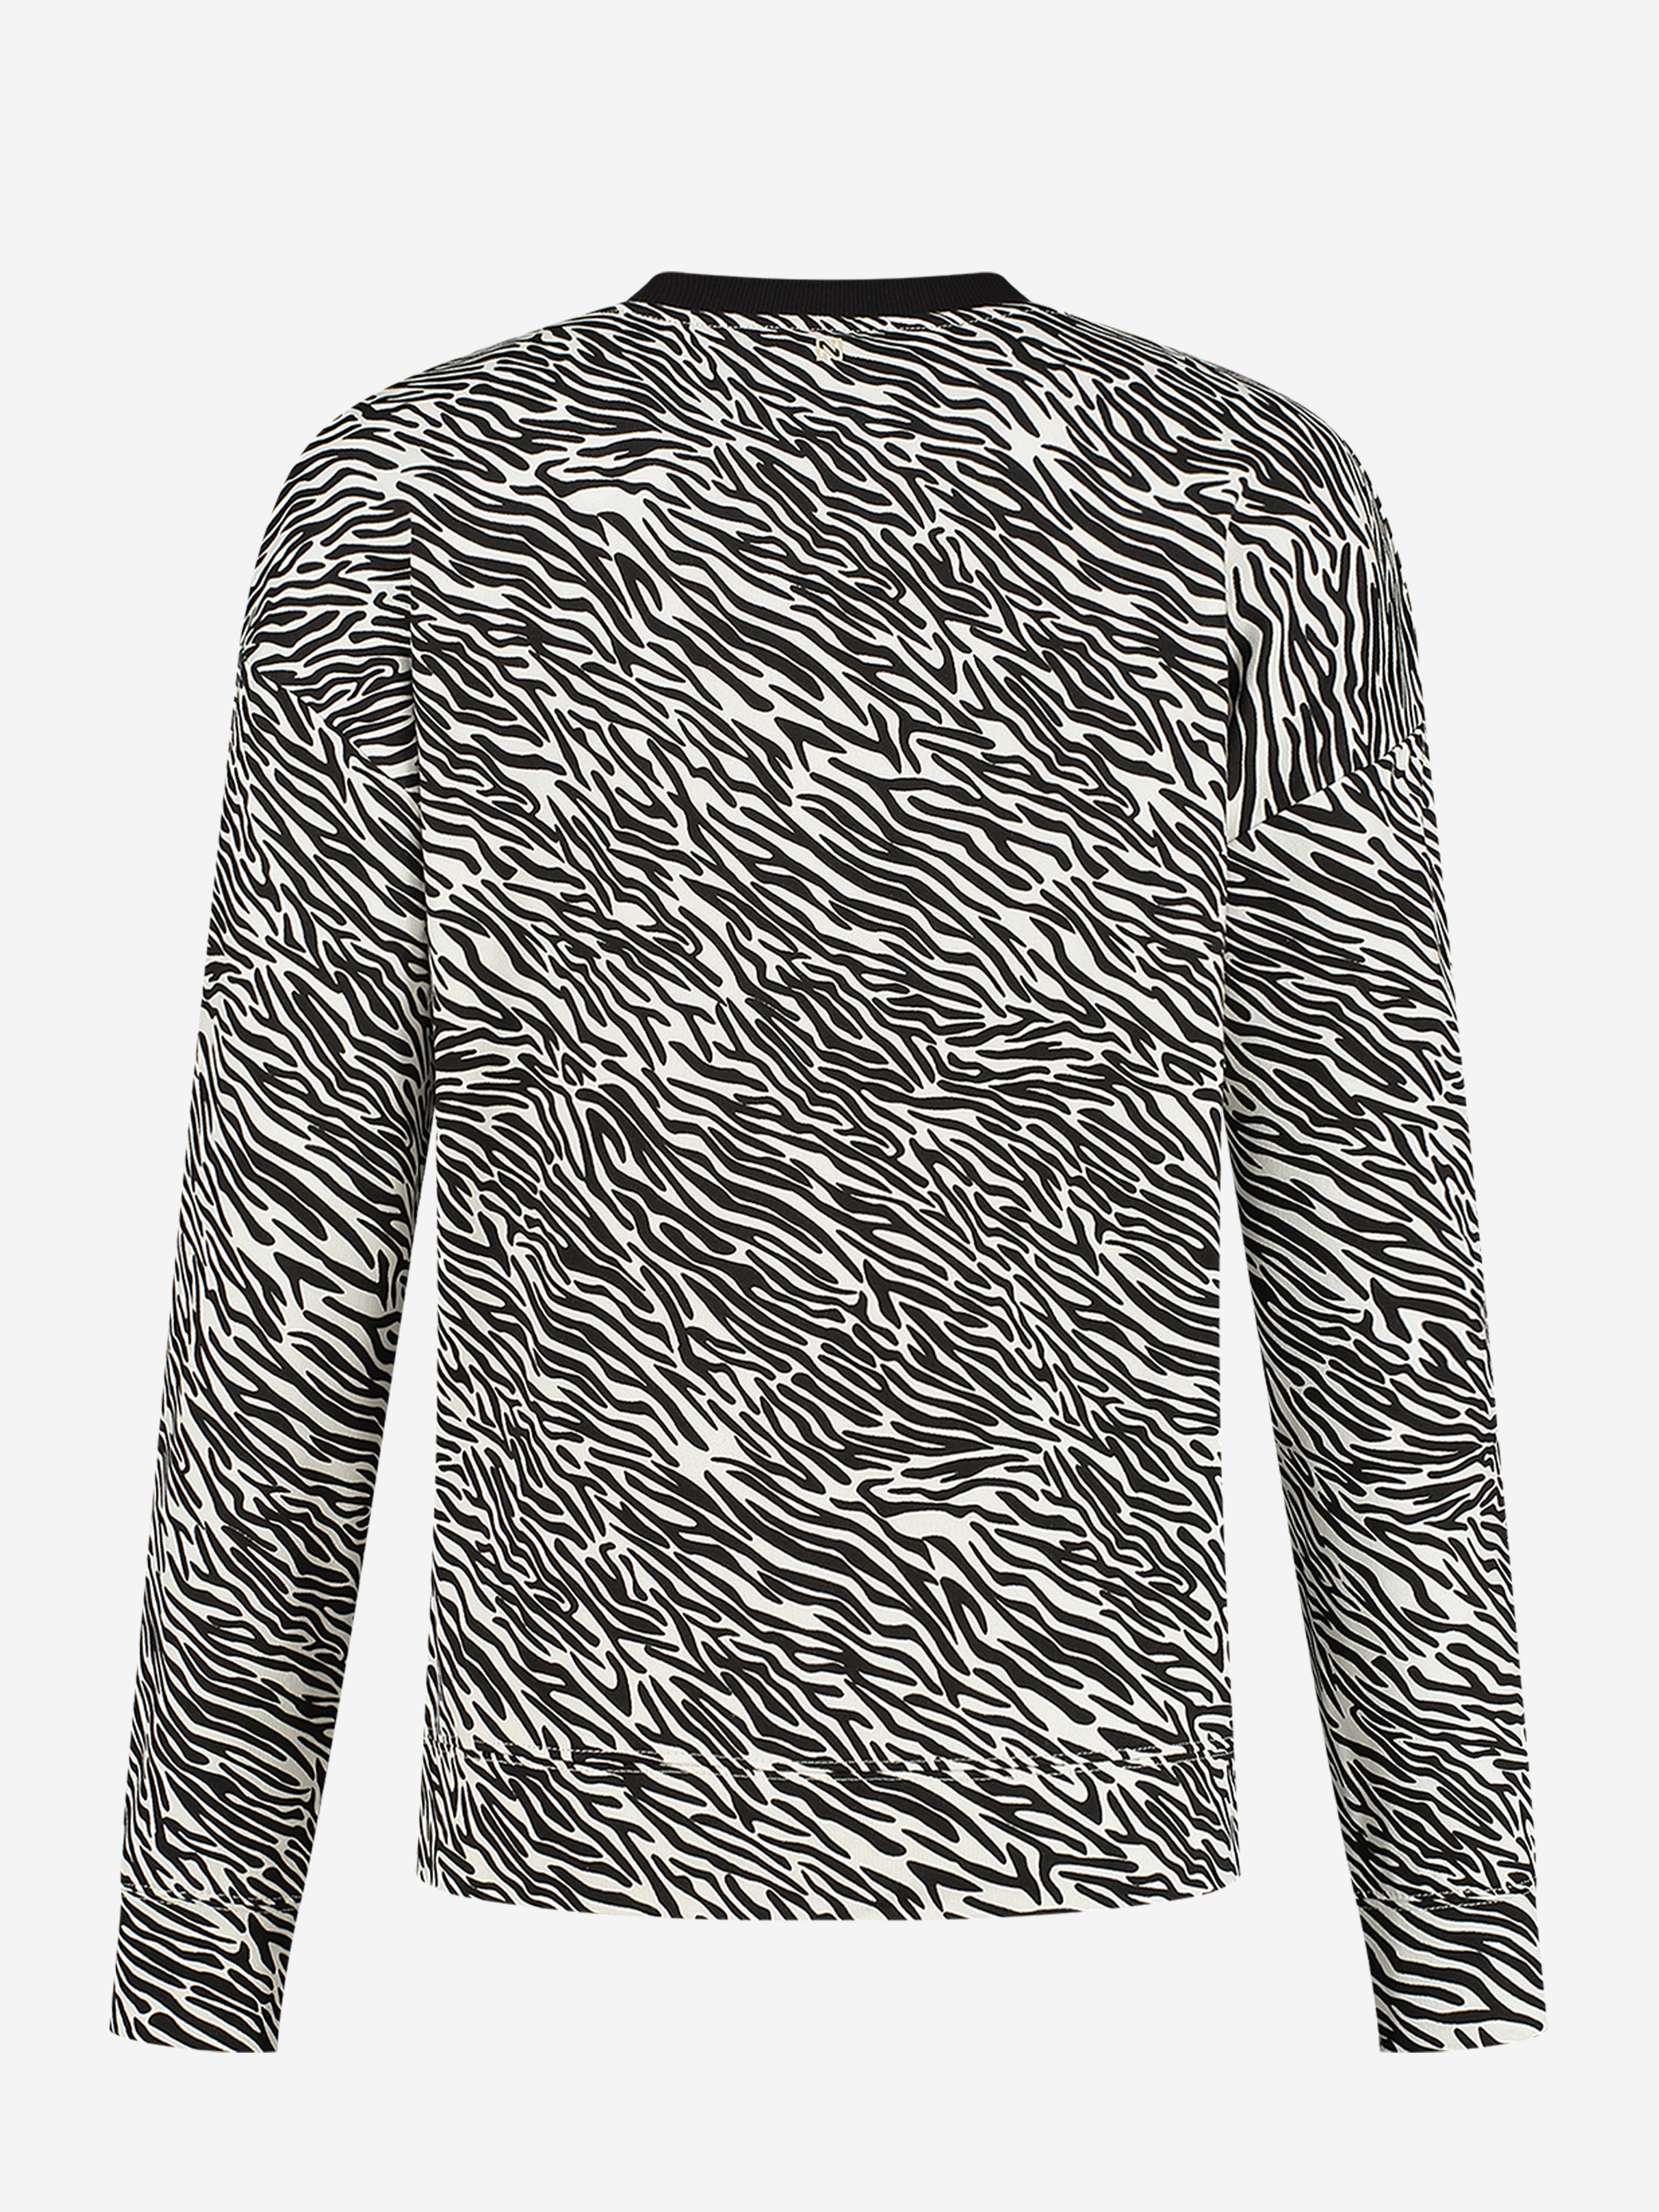 NIKKIE Zebra Sweater